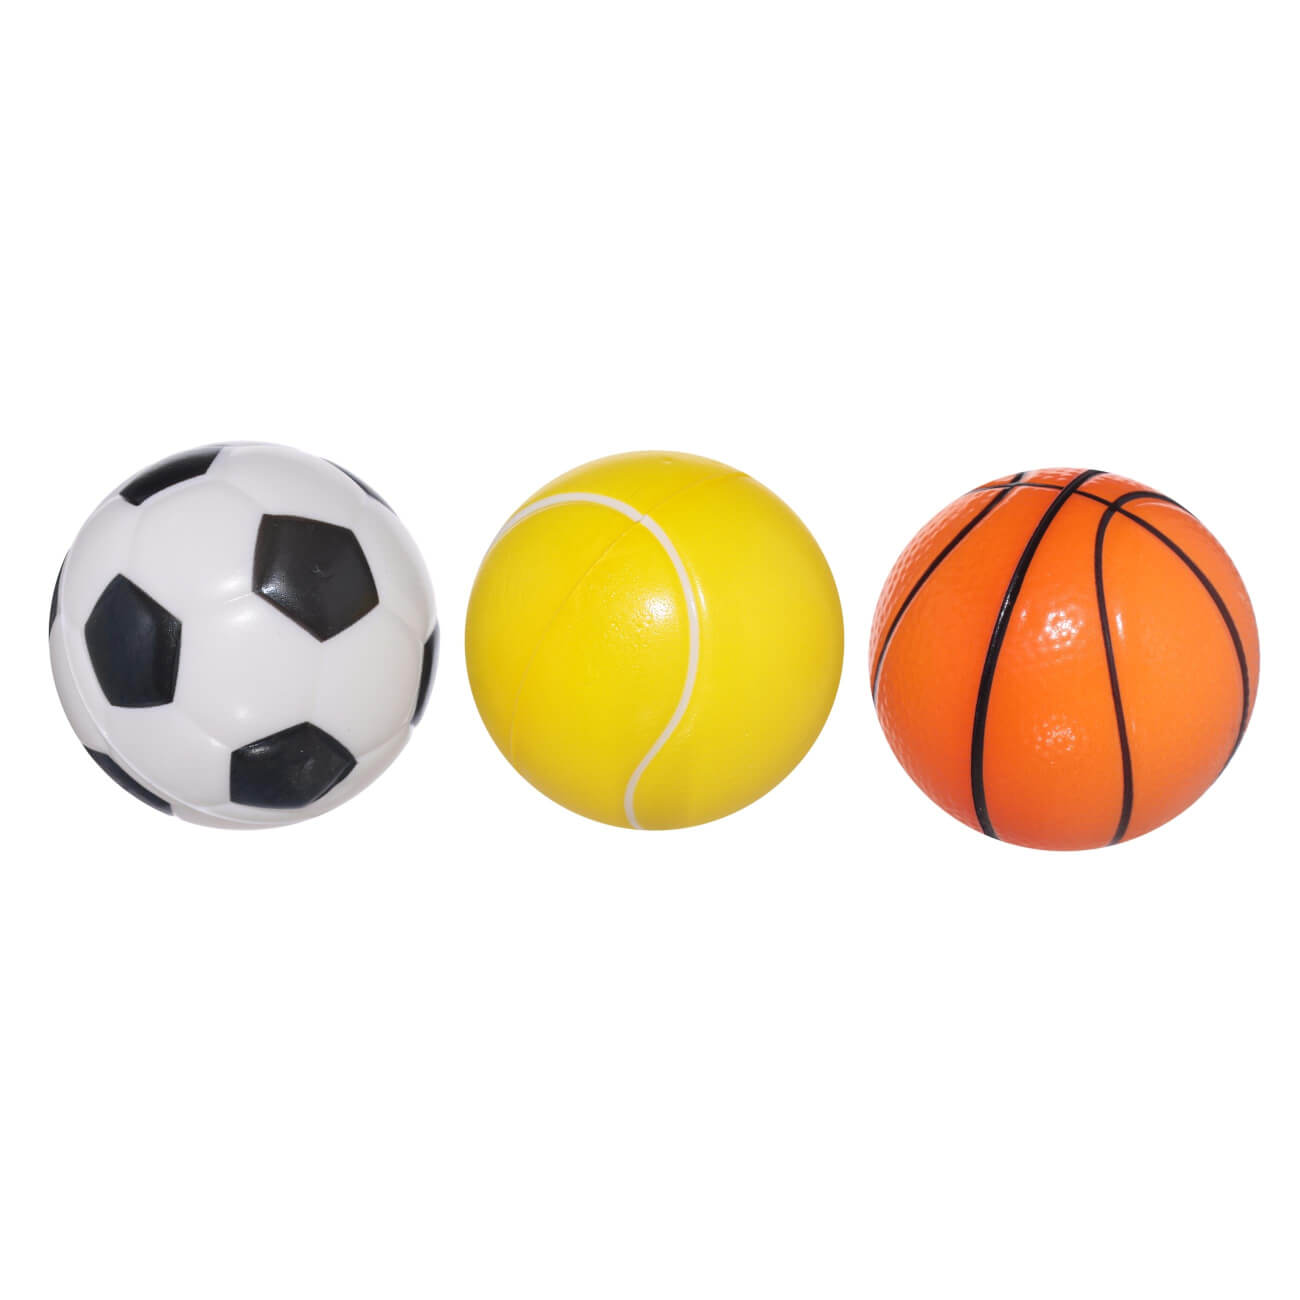 Мяч, 6 см, 3 шт, полиуретан, цветной, Футбол/Баскетбол/Теннис, Game баскетбол футбол футбол судья свисток чрезвычайная выживаемость спасение жизни